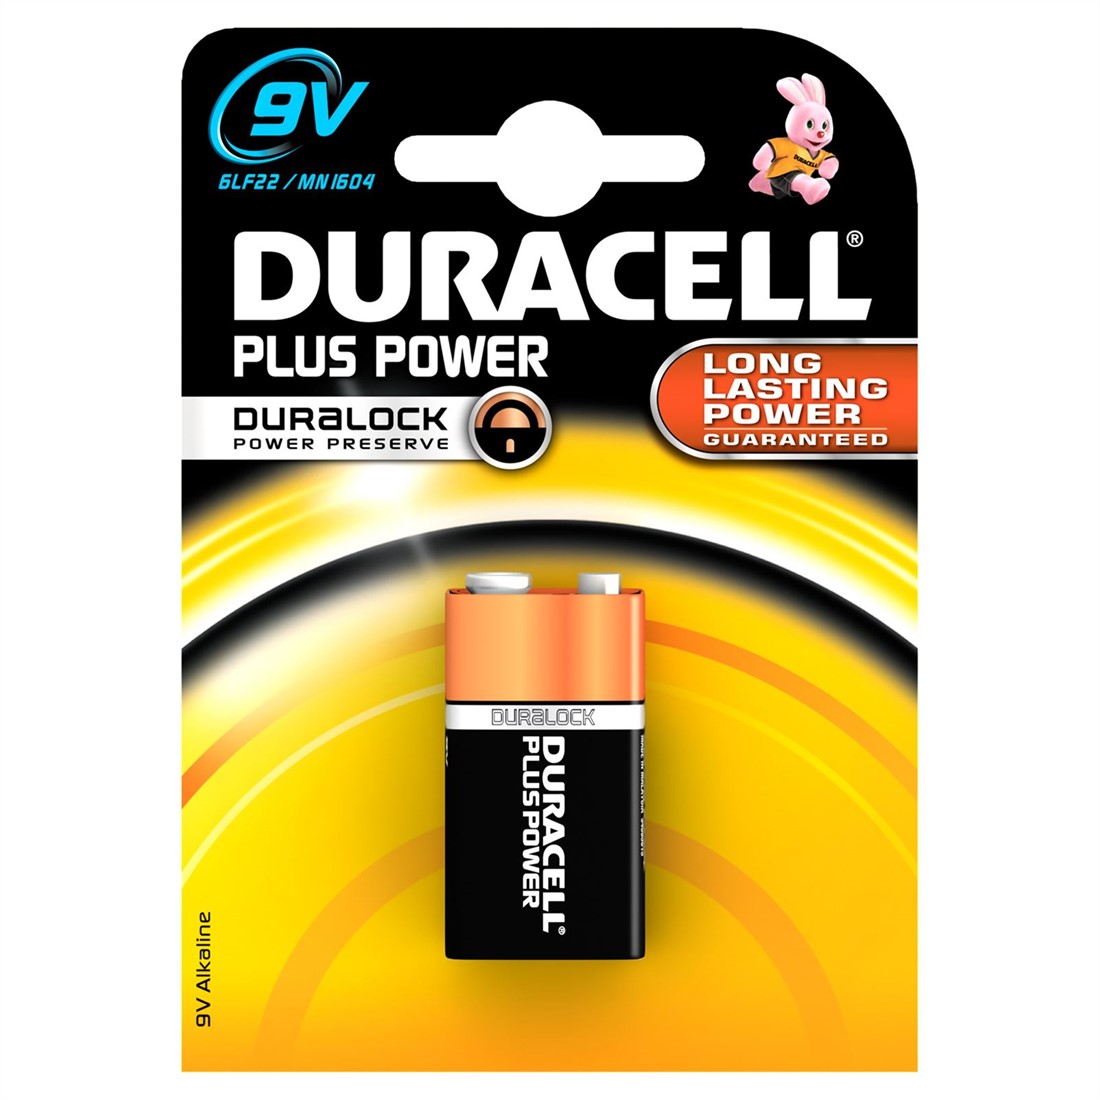 vleet nauwkeurig Componist Duracell Batterijen Plus Power MN1604 9 Volt - kopen bij Spellenrijk.nl